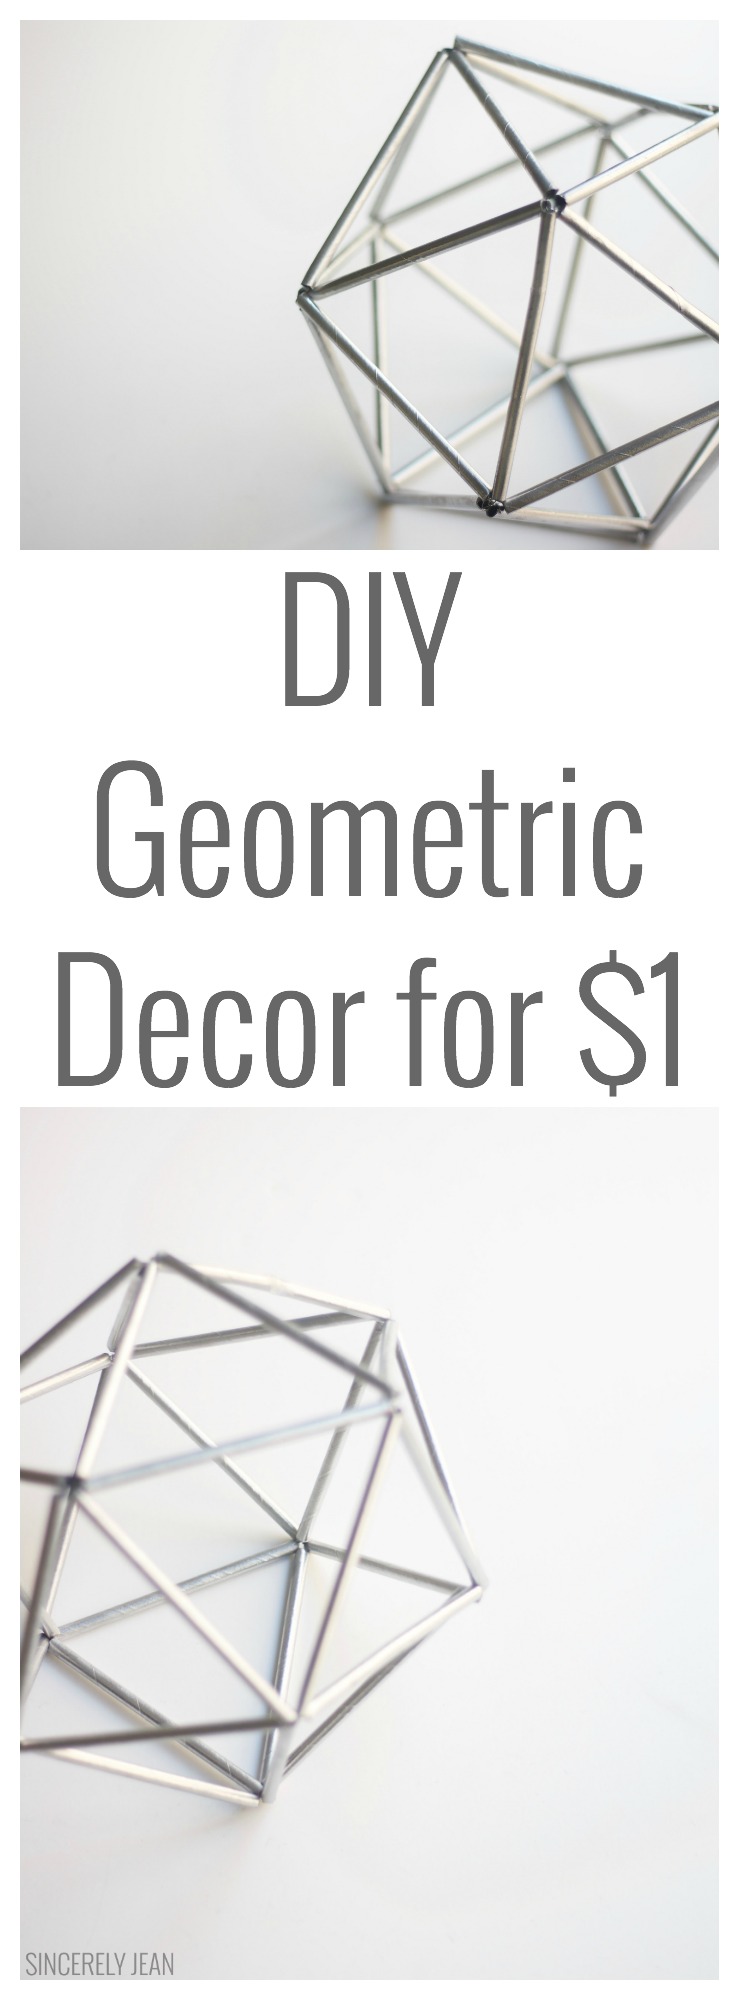 DIY Geometric Decor for $1 orb simple easy cheap himmeli home decor